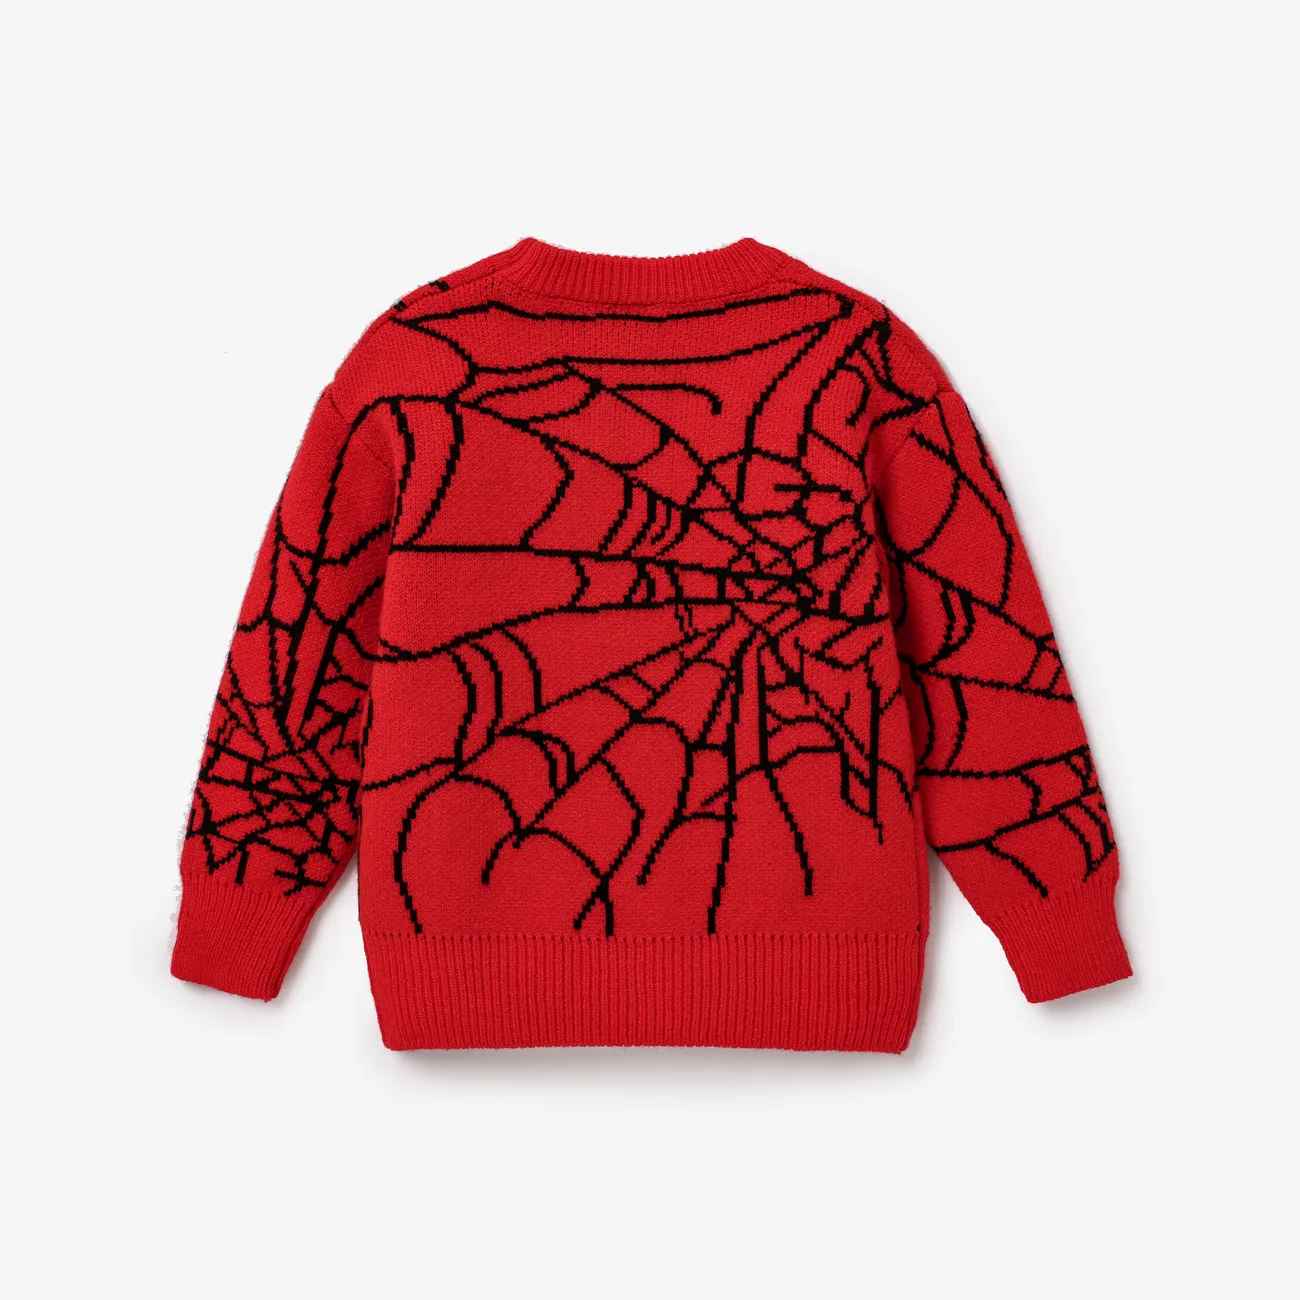 Kleinkind/Kind Junge Geometrischer Spinnennetz-Design-Muster-Oversize-Pullover rot big image 1